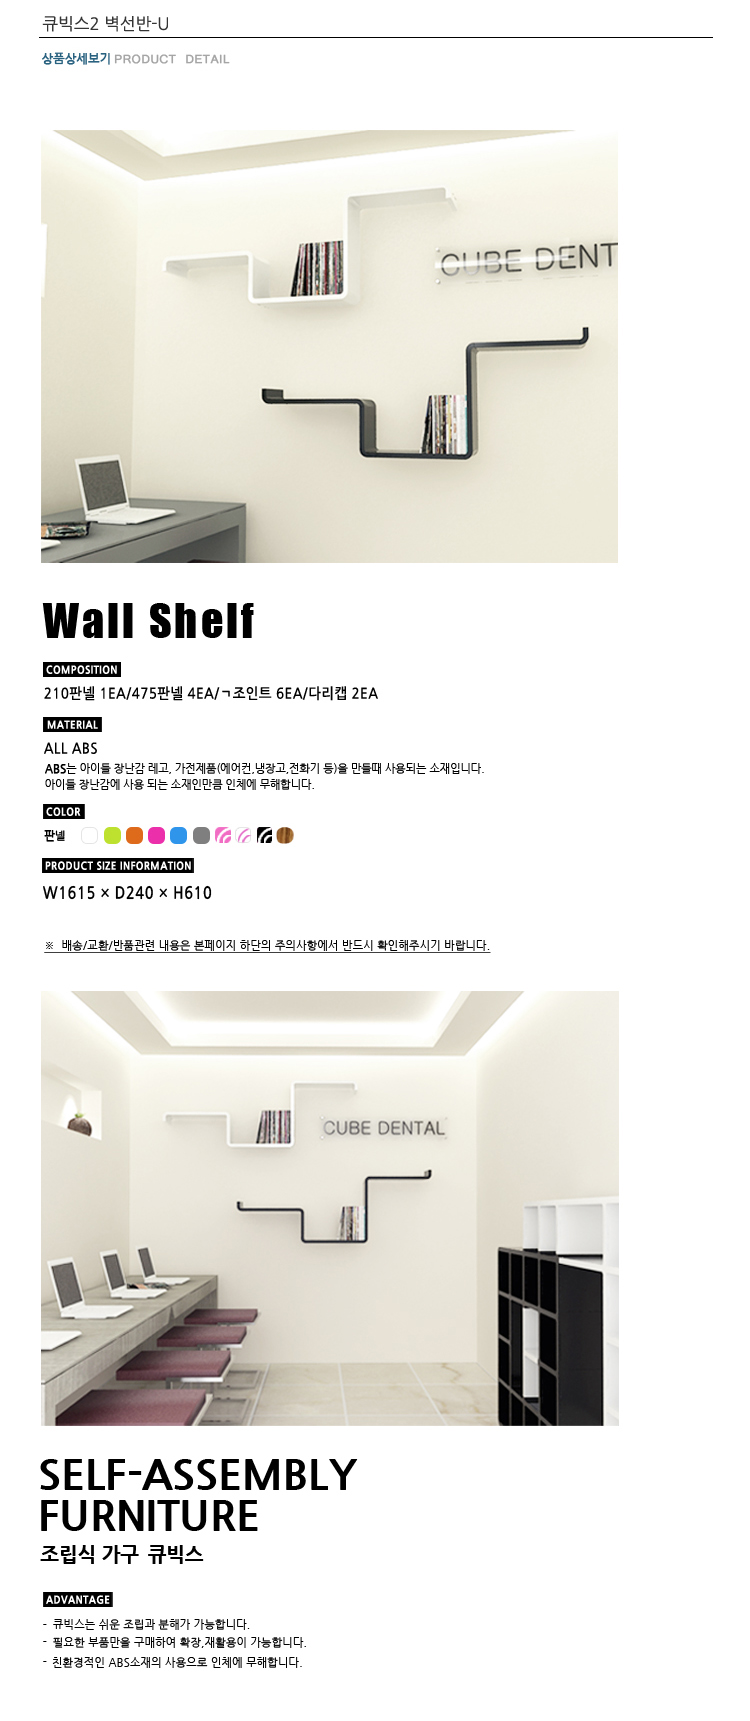 750_cu2_wallshelf-U_01_1.jpg